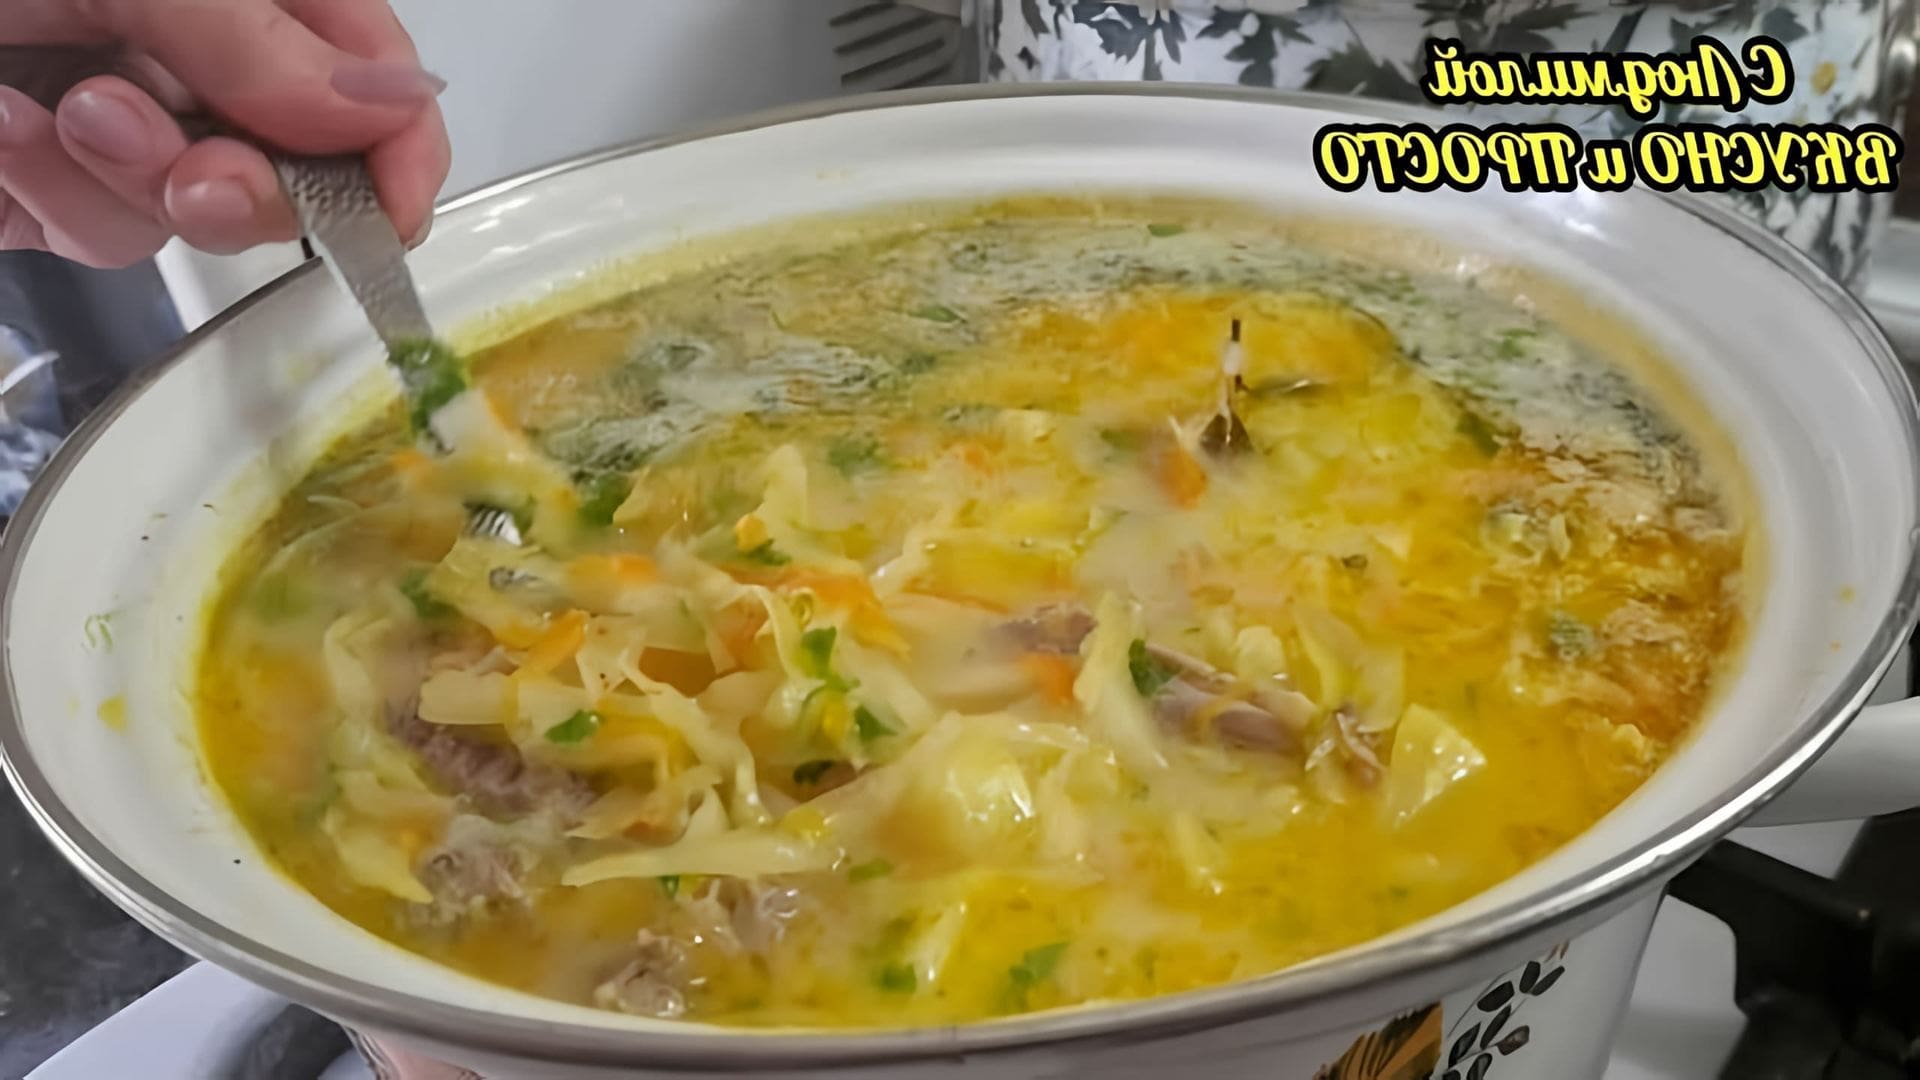 В этом видео демонстрируется рецепт приготовления сливочного супа с капустой и фасолью